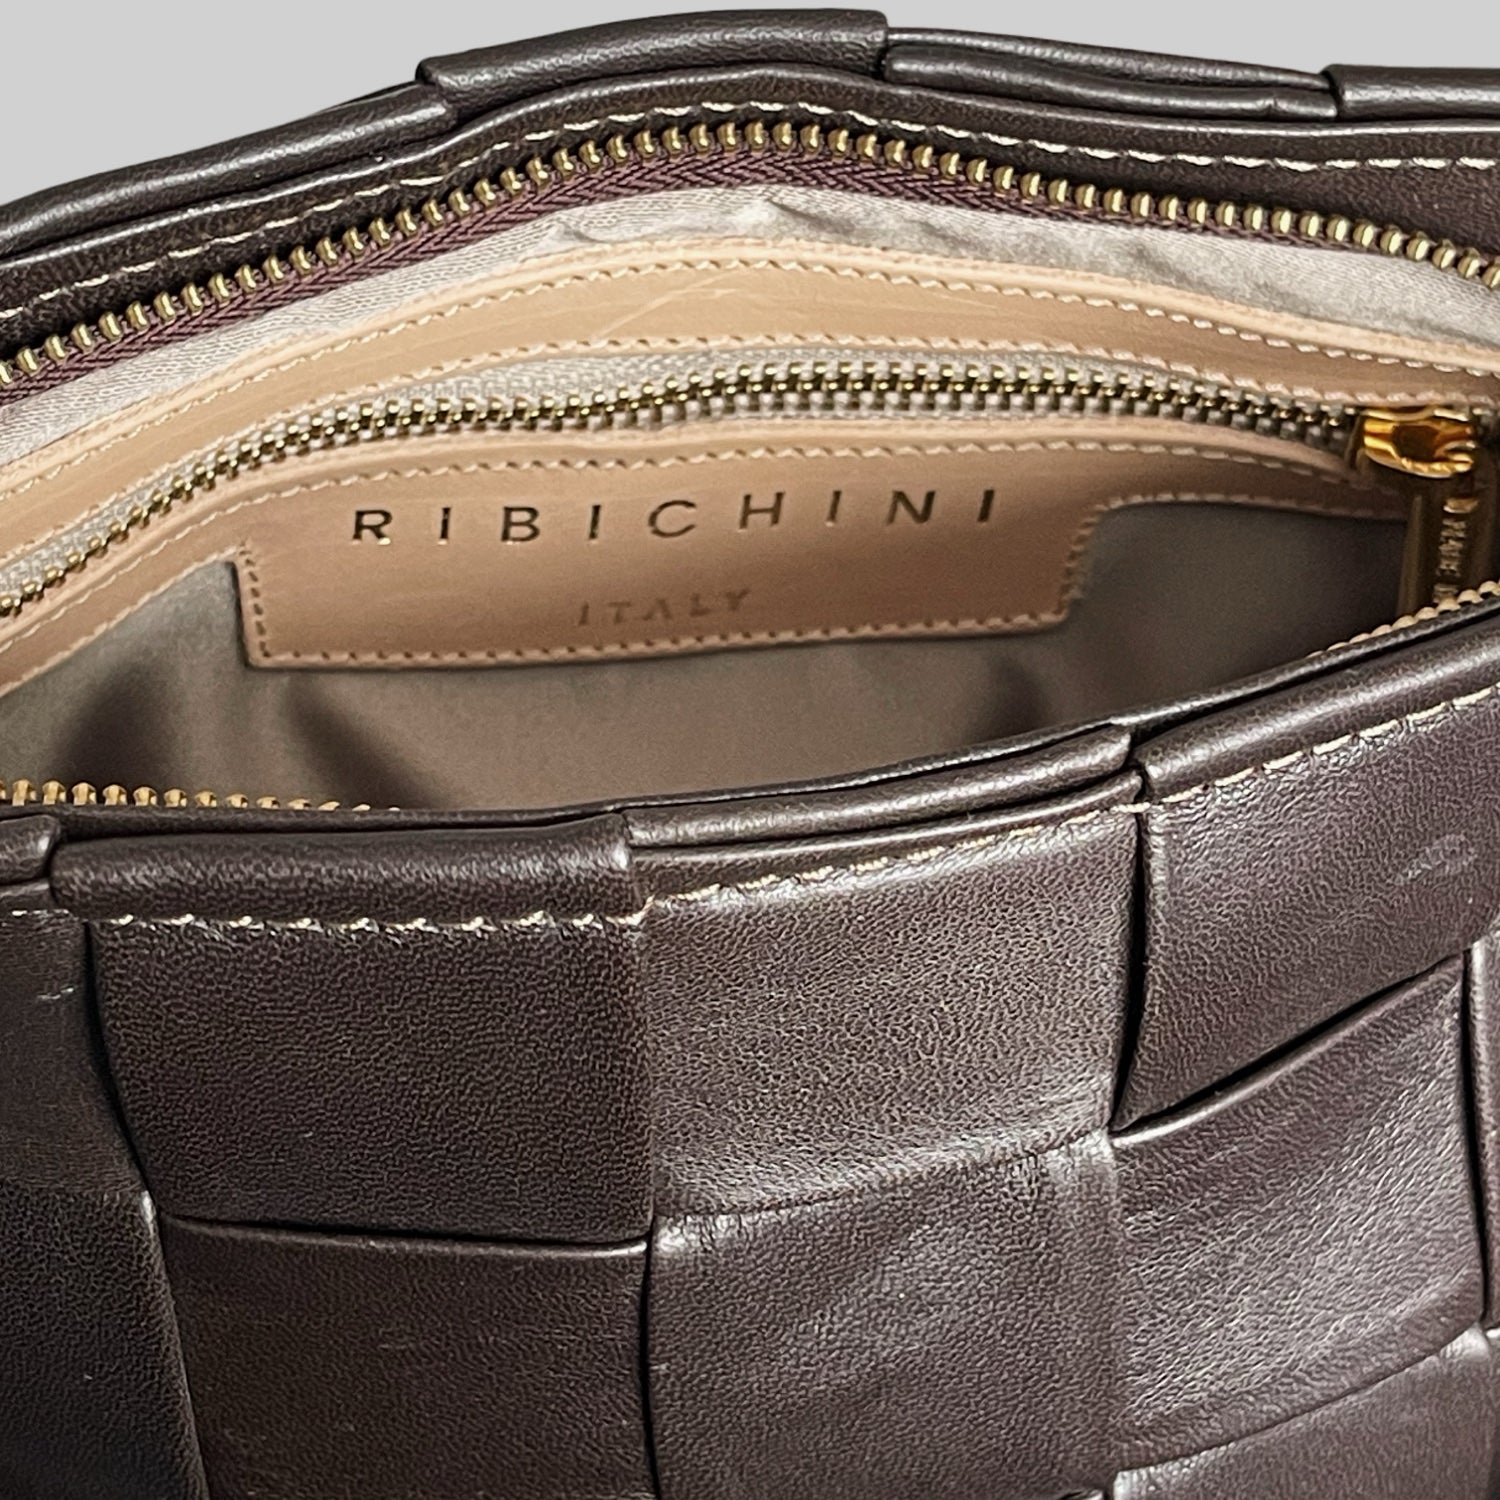 Innsiden av Ribichini Square Clutch i fargen chocolate viser etiketten "RIBICHINI ITALY" i gullskrift på en lys bakgrunn. Elegant kontrast og høykvalitets håndverk.